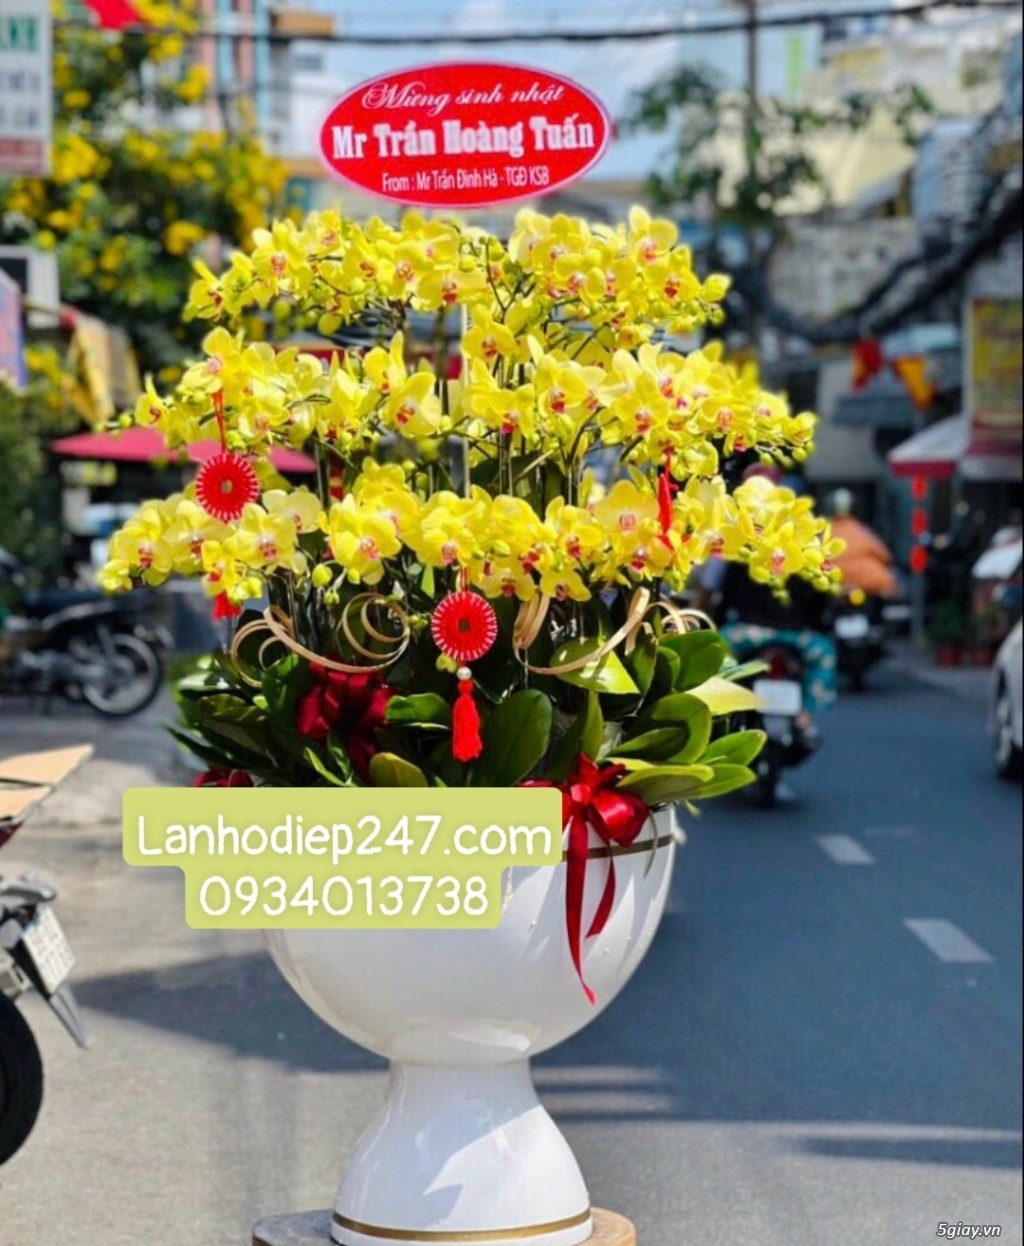 Shop hoa tươi lan hồ điệp tại Biên Hòa Đồng Nai 0934013738 - 4